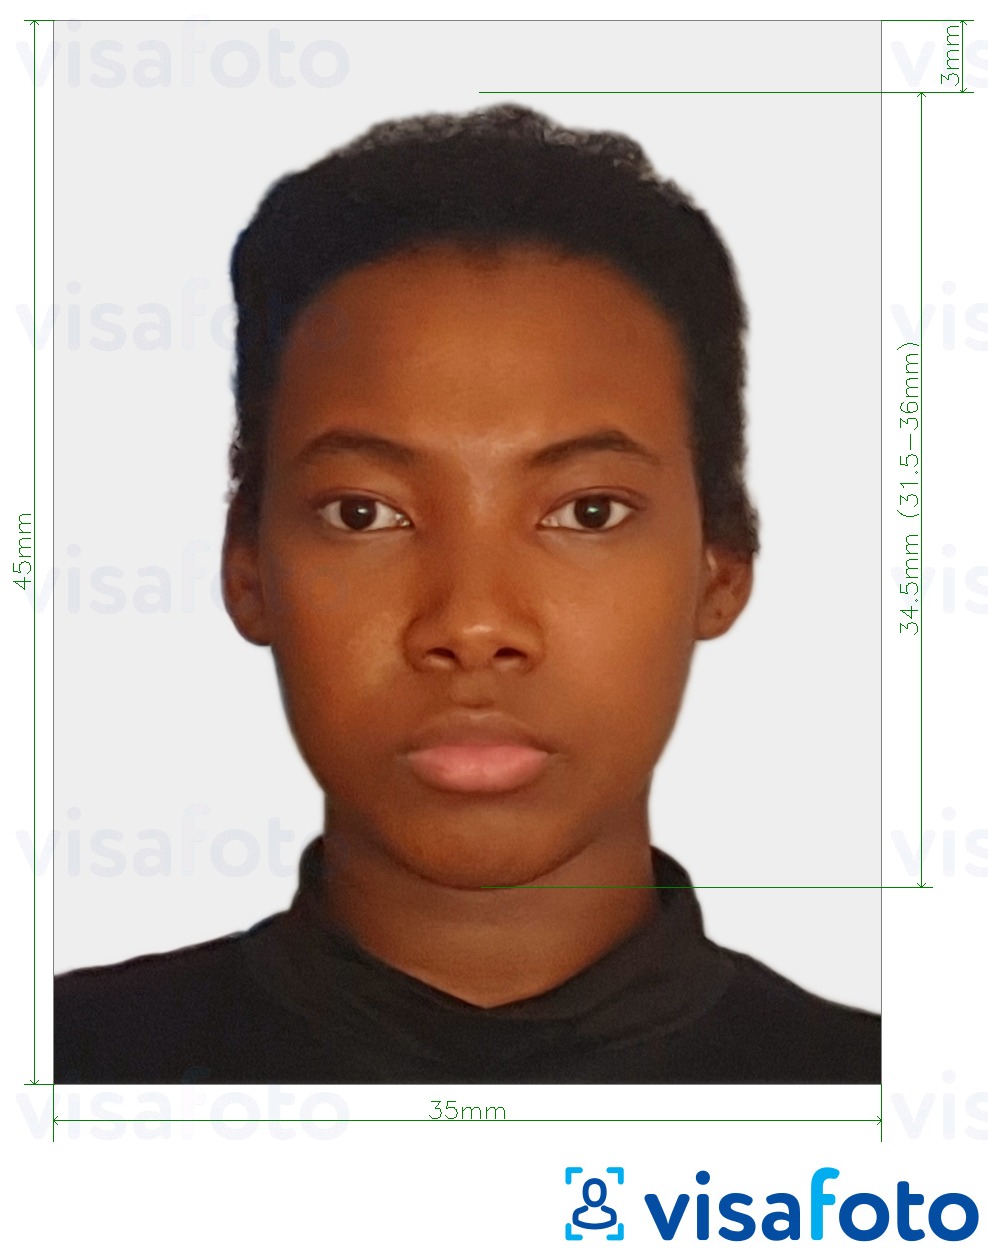 Primjer fotografije za Surinamska putovnica 45x35 mm (1,77 x 1,37 inča) s točno određenom veličinom